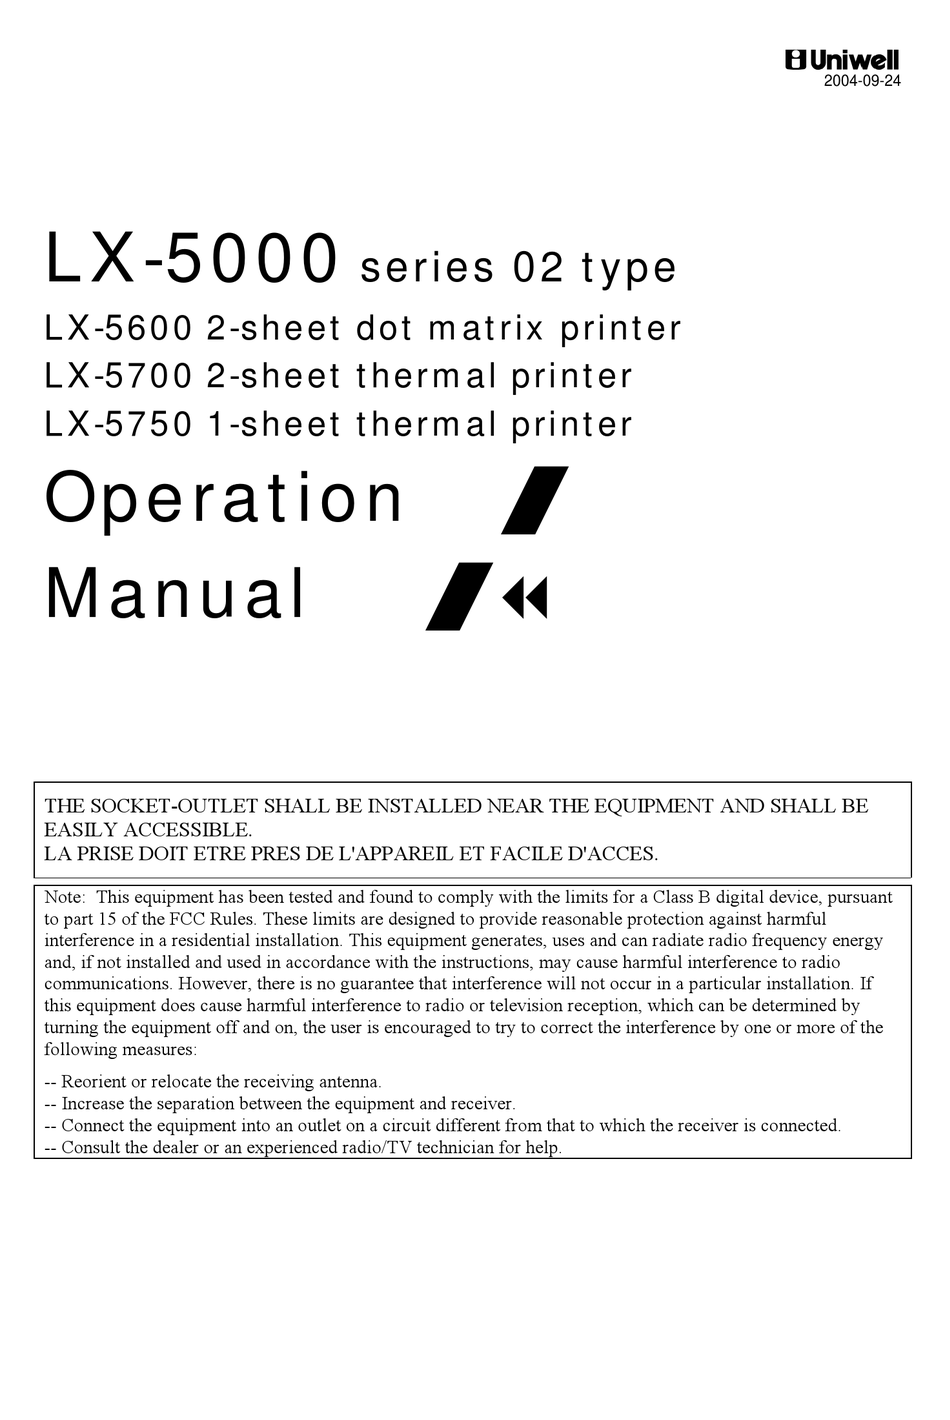 UNIWELL LX-5600 OPERATION MANUAL Pdf Download | ManualsLib